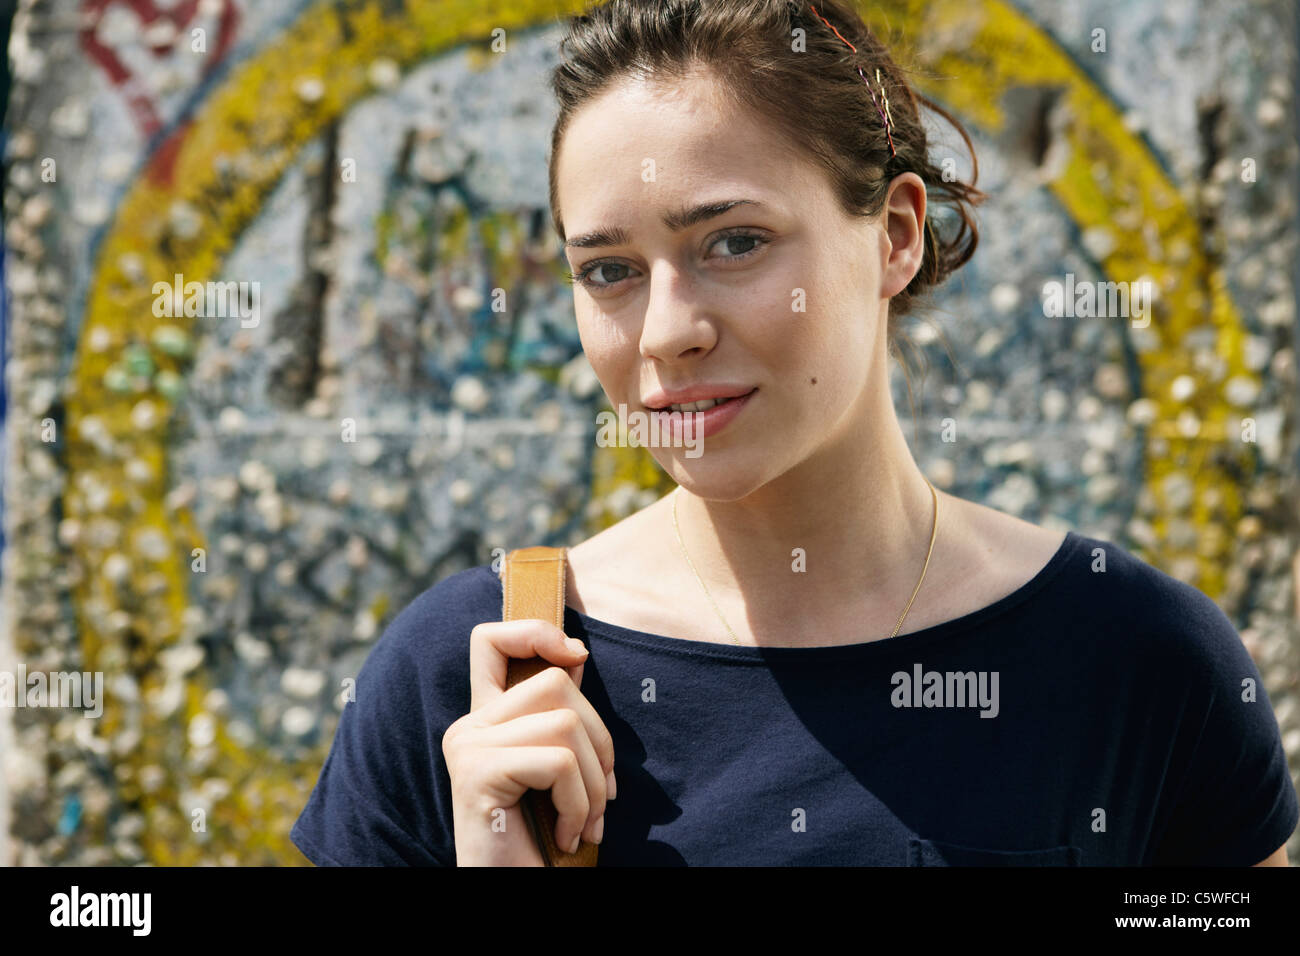 Germania, Berlino, giovane donna in piedi di fronte a muro con graffiti, ritratto, close-up Foto Stock